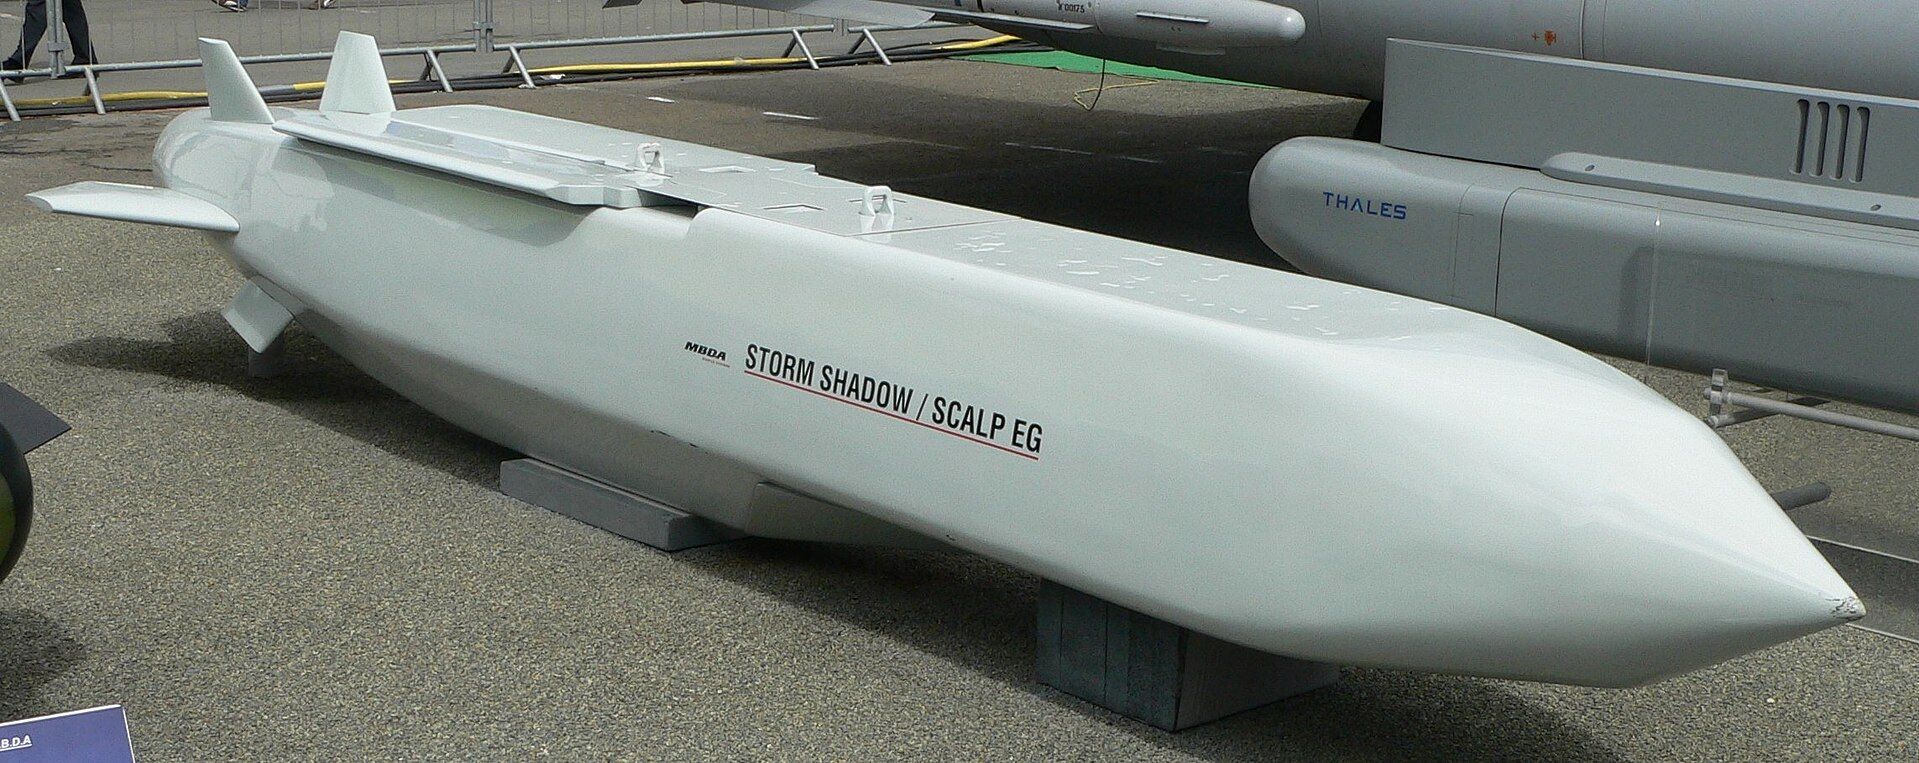 Storm Shadow: Великобритания предоставит Украине дальнобойные ракеты, - Риши Сунак